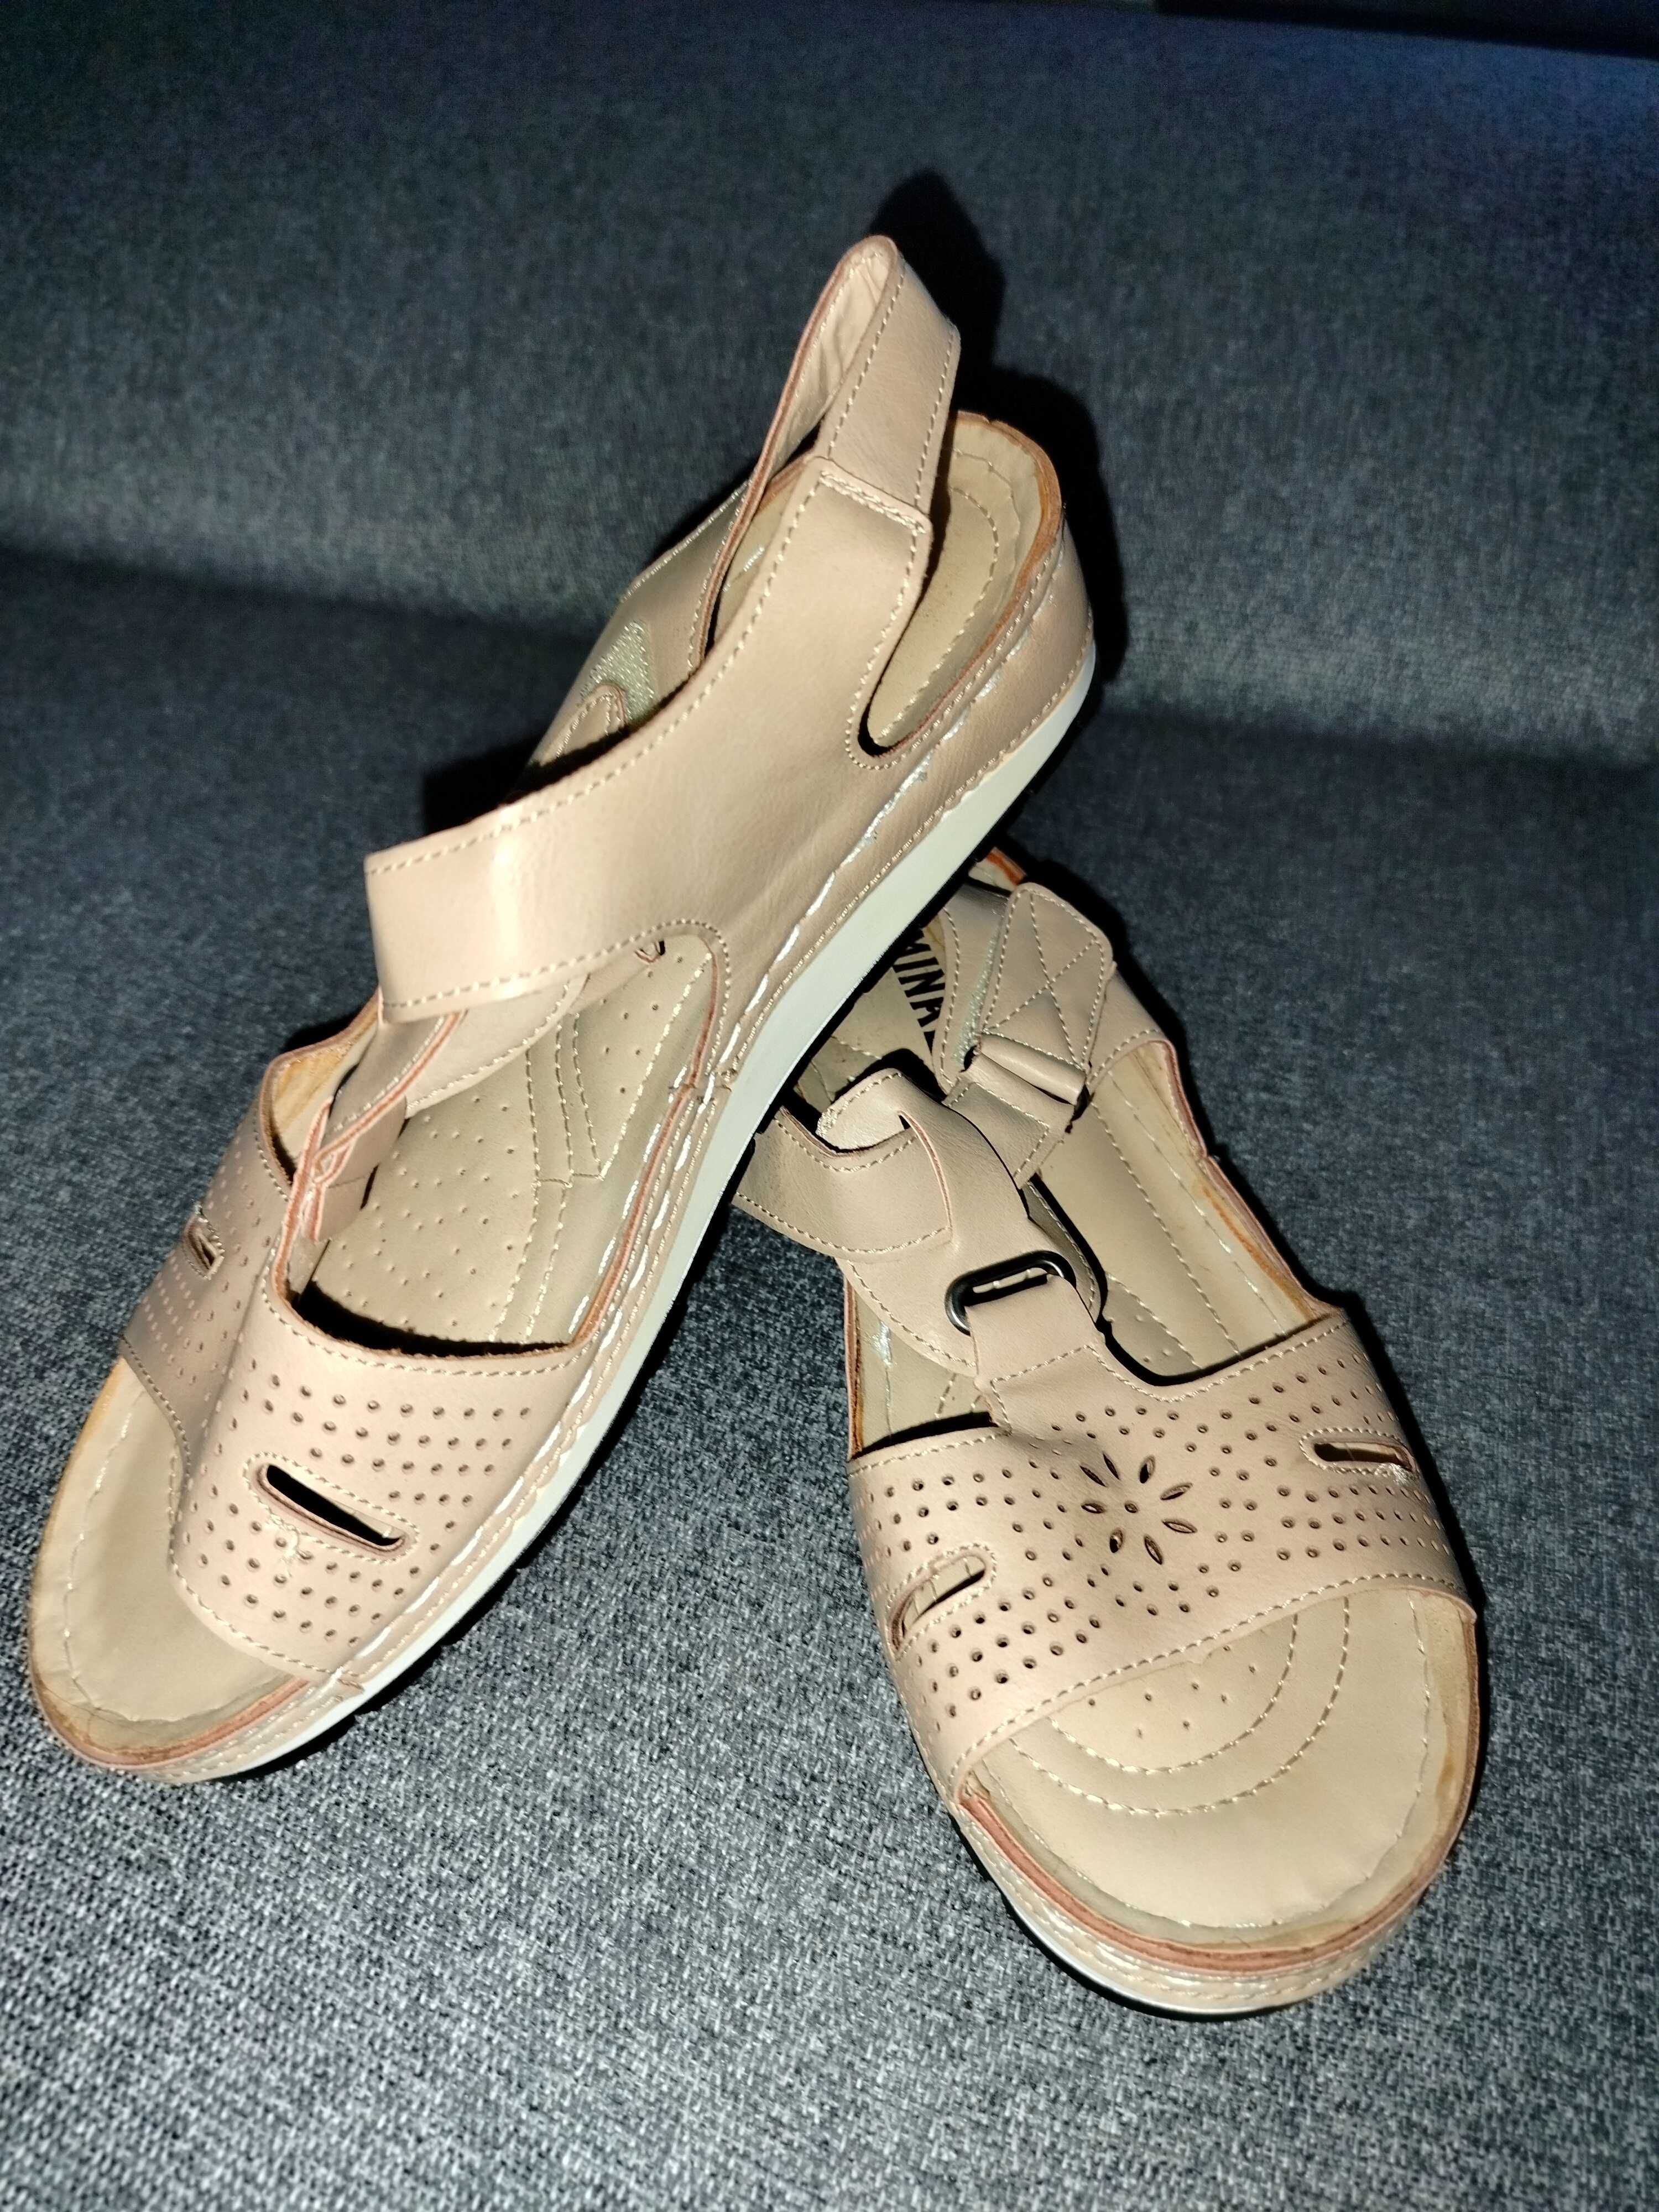 Buty sandały damskie Minke beżowe 40